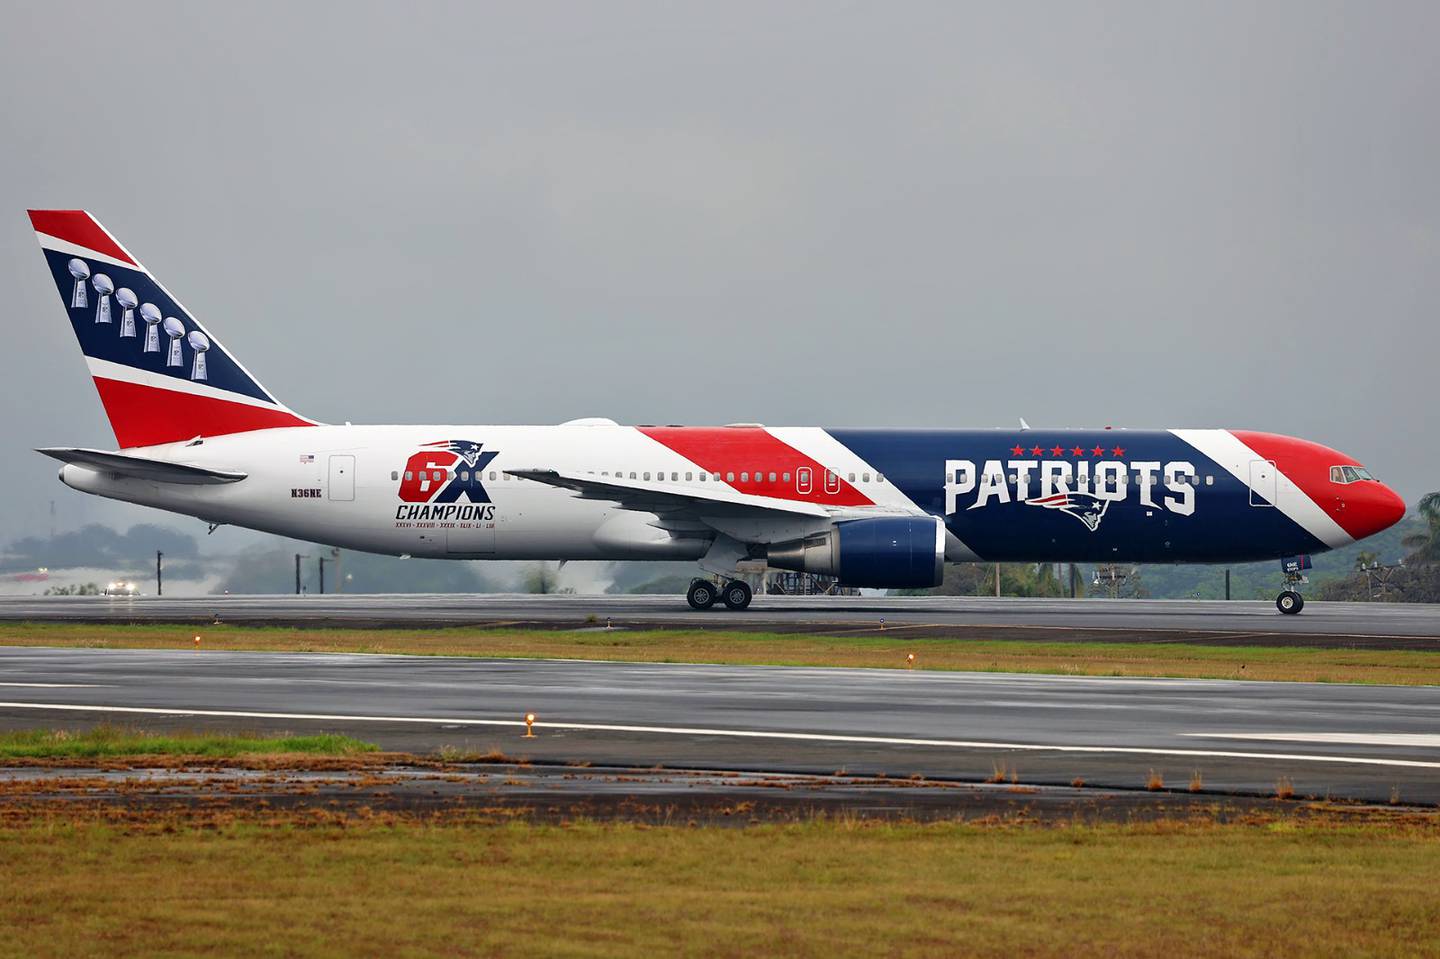 Este es el avión de los New England Patriots en el aeropuerto Juan Santamaría. Fotografía: Tomás Cubero